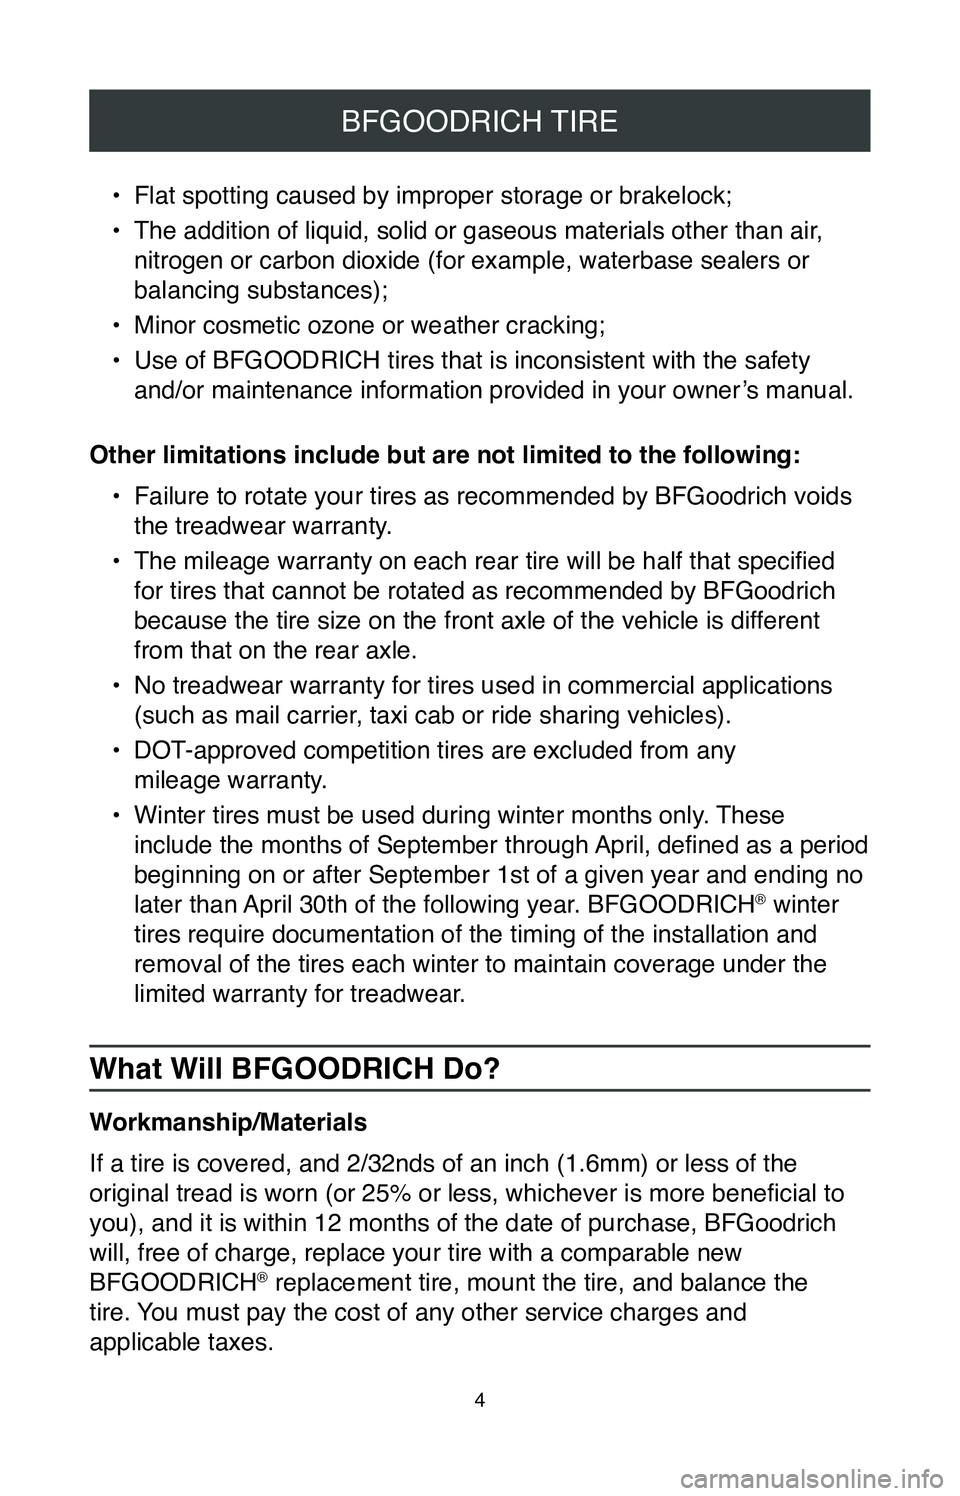 TOYOTA SIENNA 2020  Warranties & Maintenance Guides (in English) 4
BFGOODRICH TIRE
